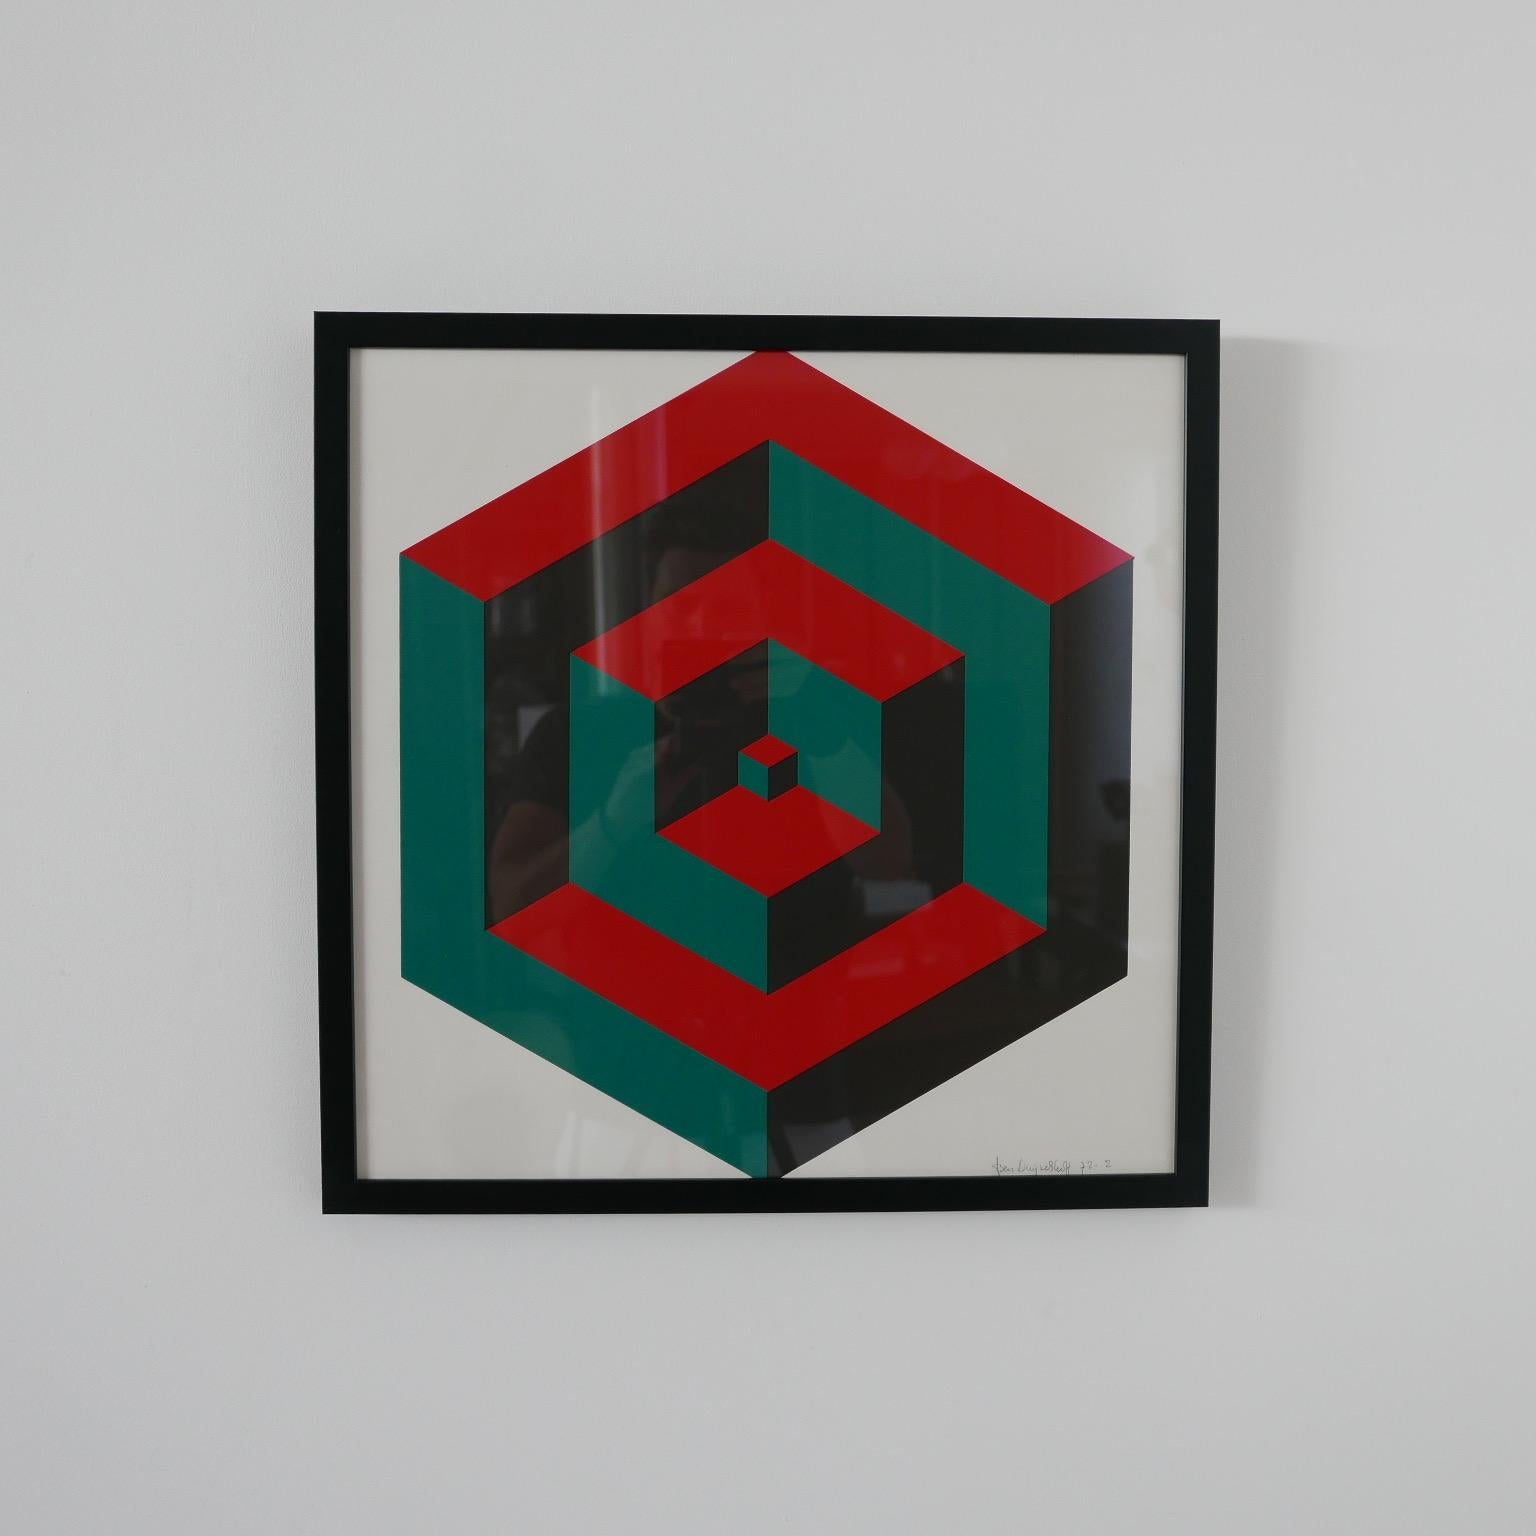 Une œuvre d'art géométrique néerlandaise de style illusionniste. 

Signé, vers les années 1970. 

Encadré dans un cadre noir simple. 

D'un ensemble de quatre, mais vendu individuellement.

Bon état général, taches ou signes de